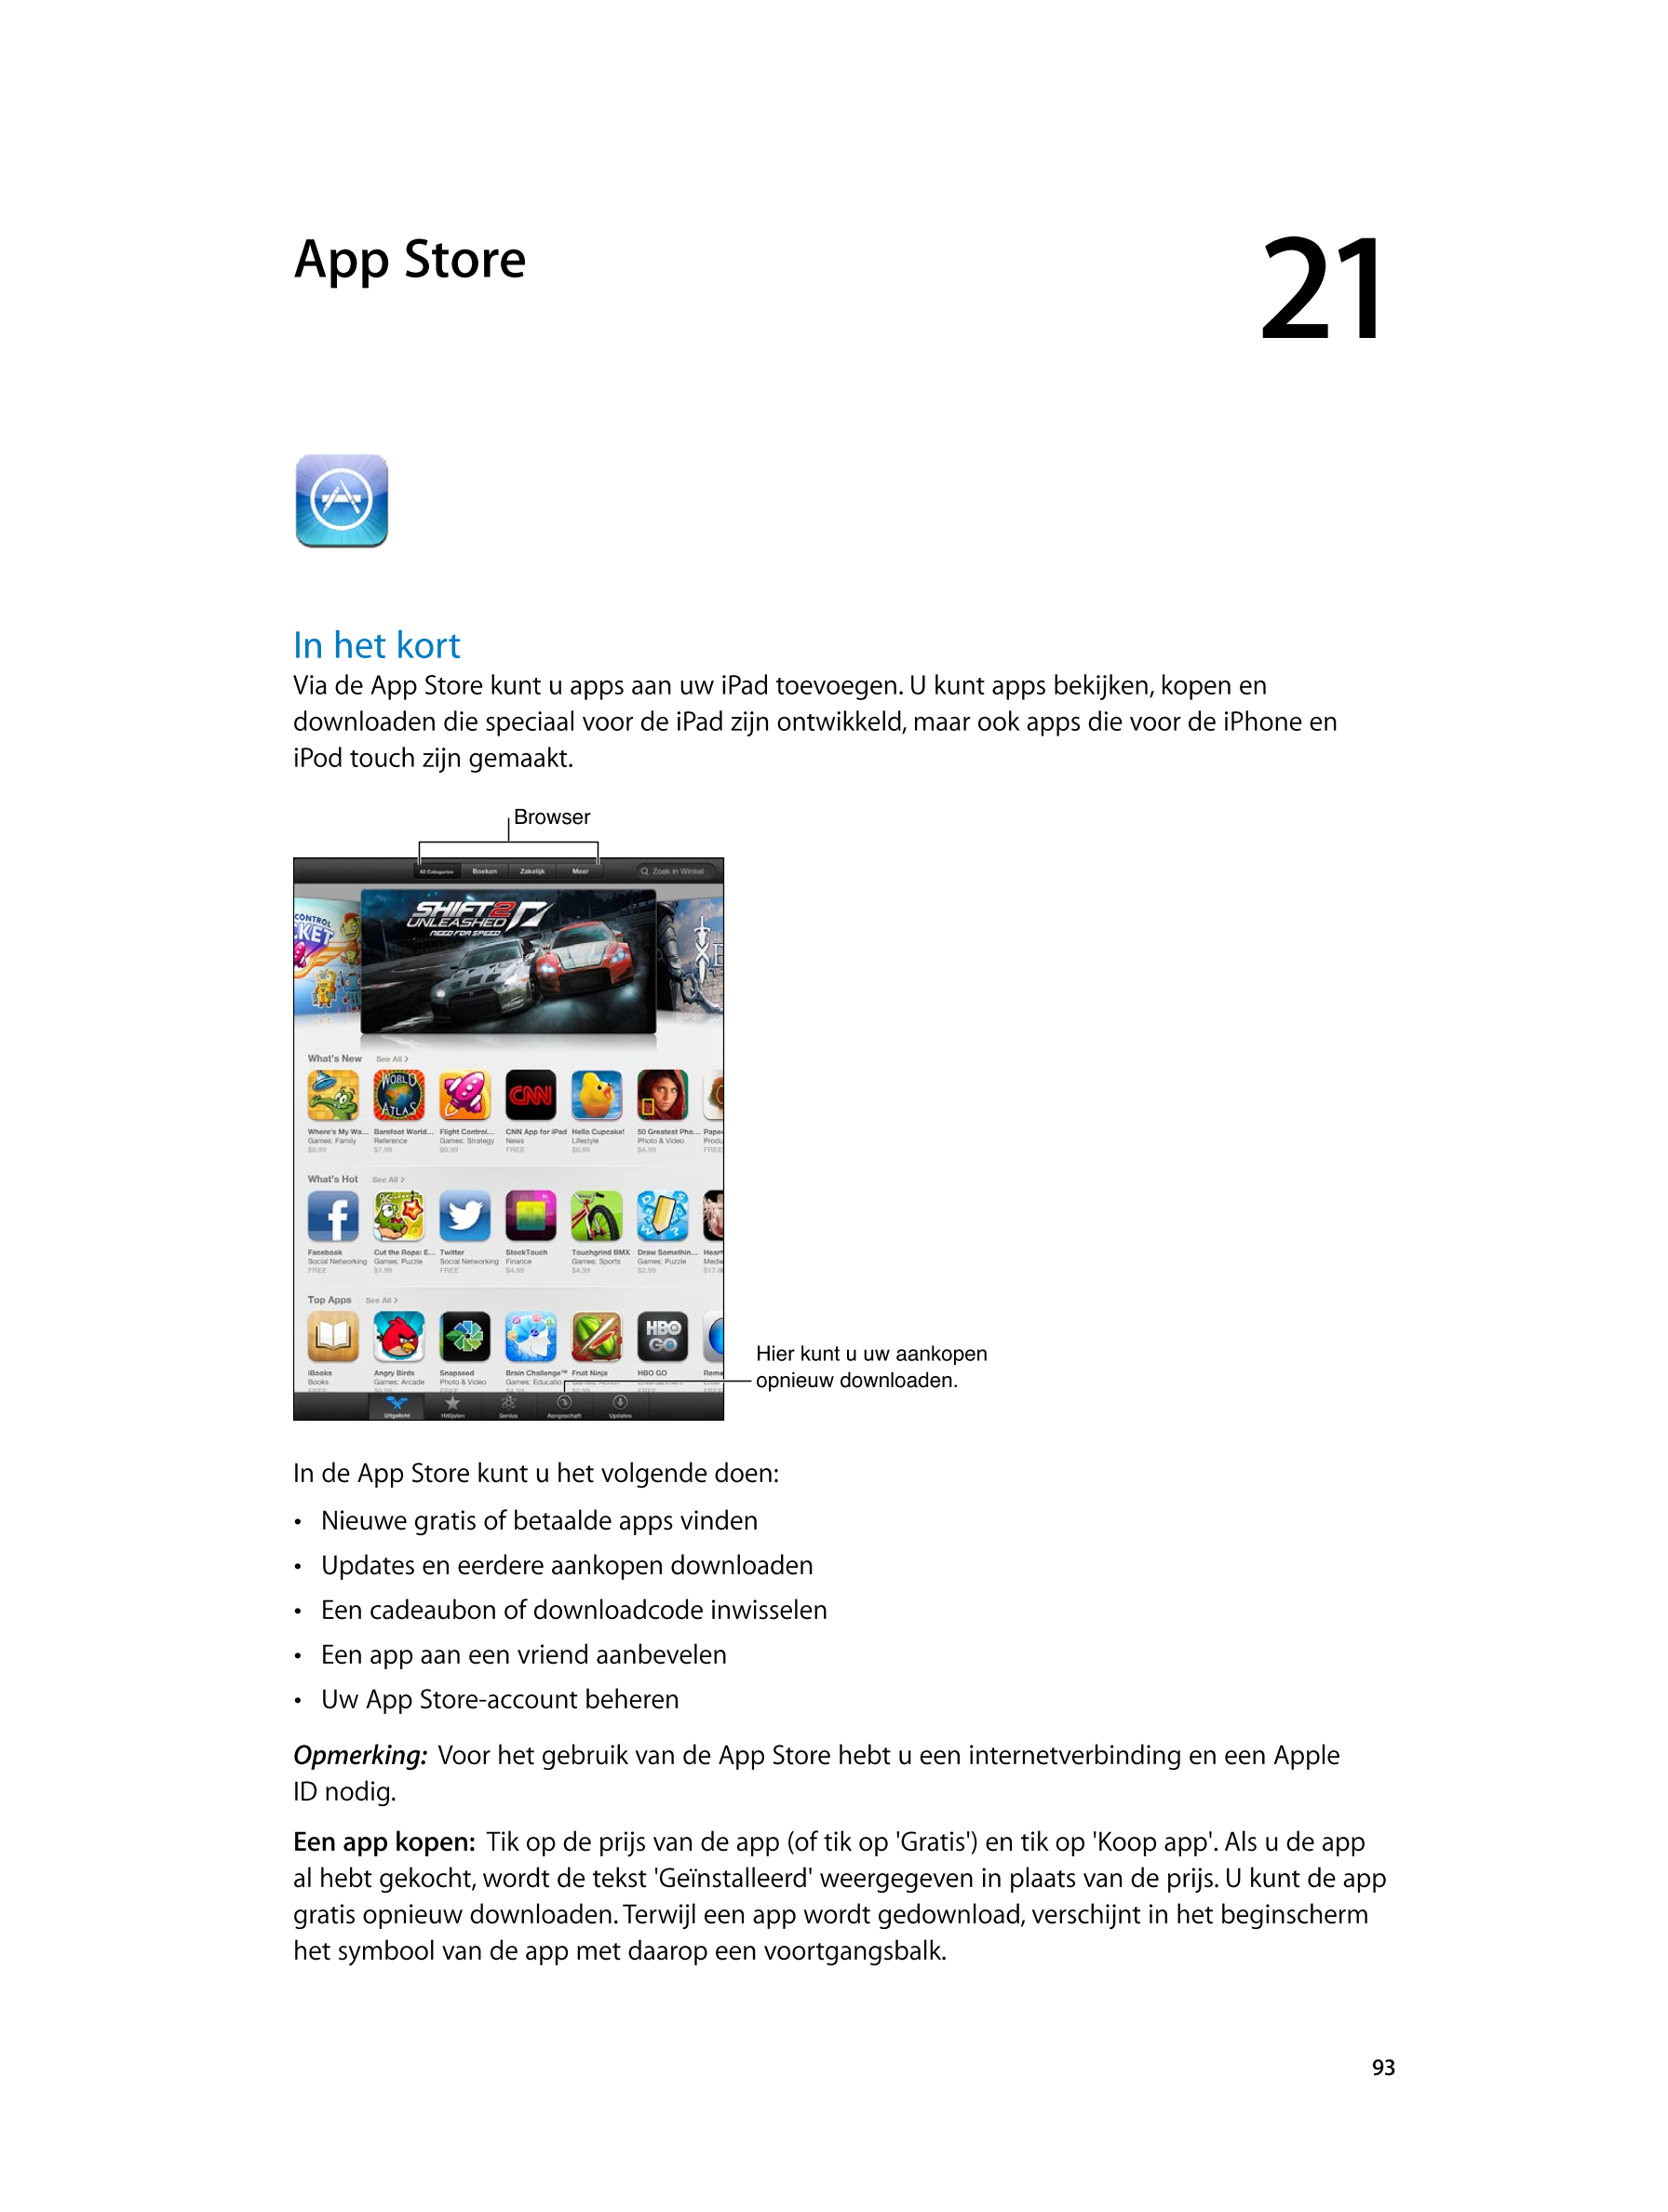   App Store 21
In het kort
Via de App Store kunt u apps aan uw iPad toevoegen. U kunt apps bekijken, kopen en 
downloaden die sp